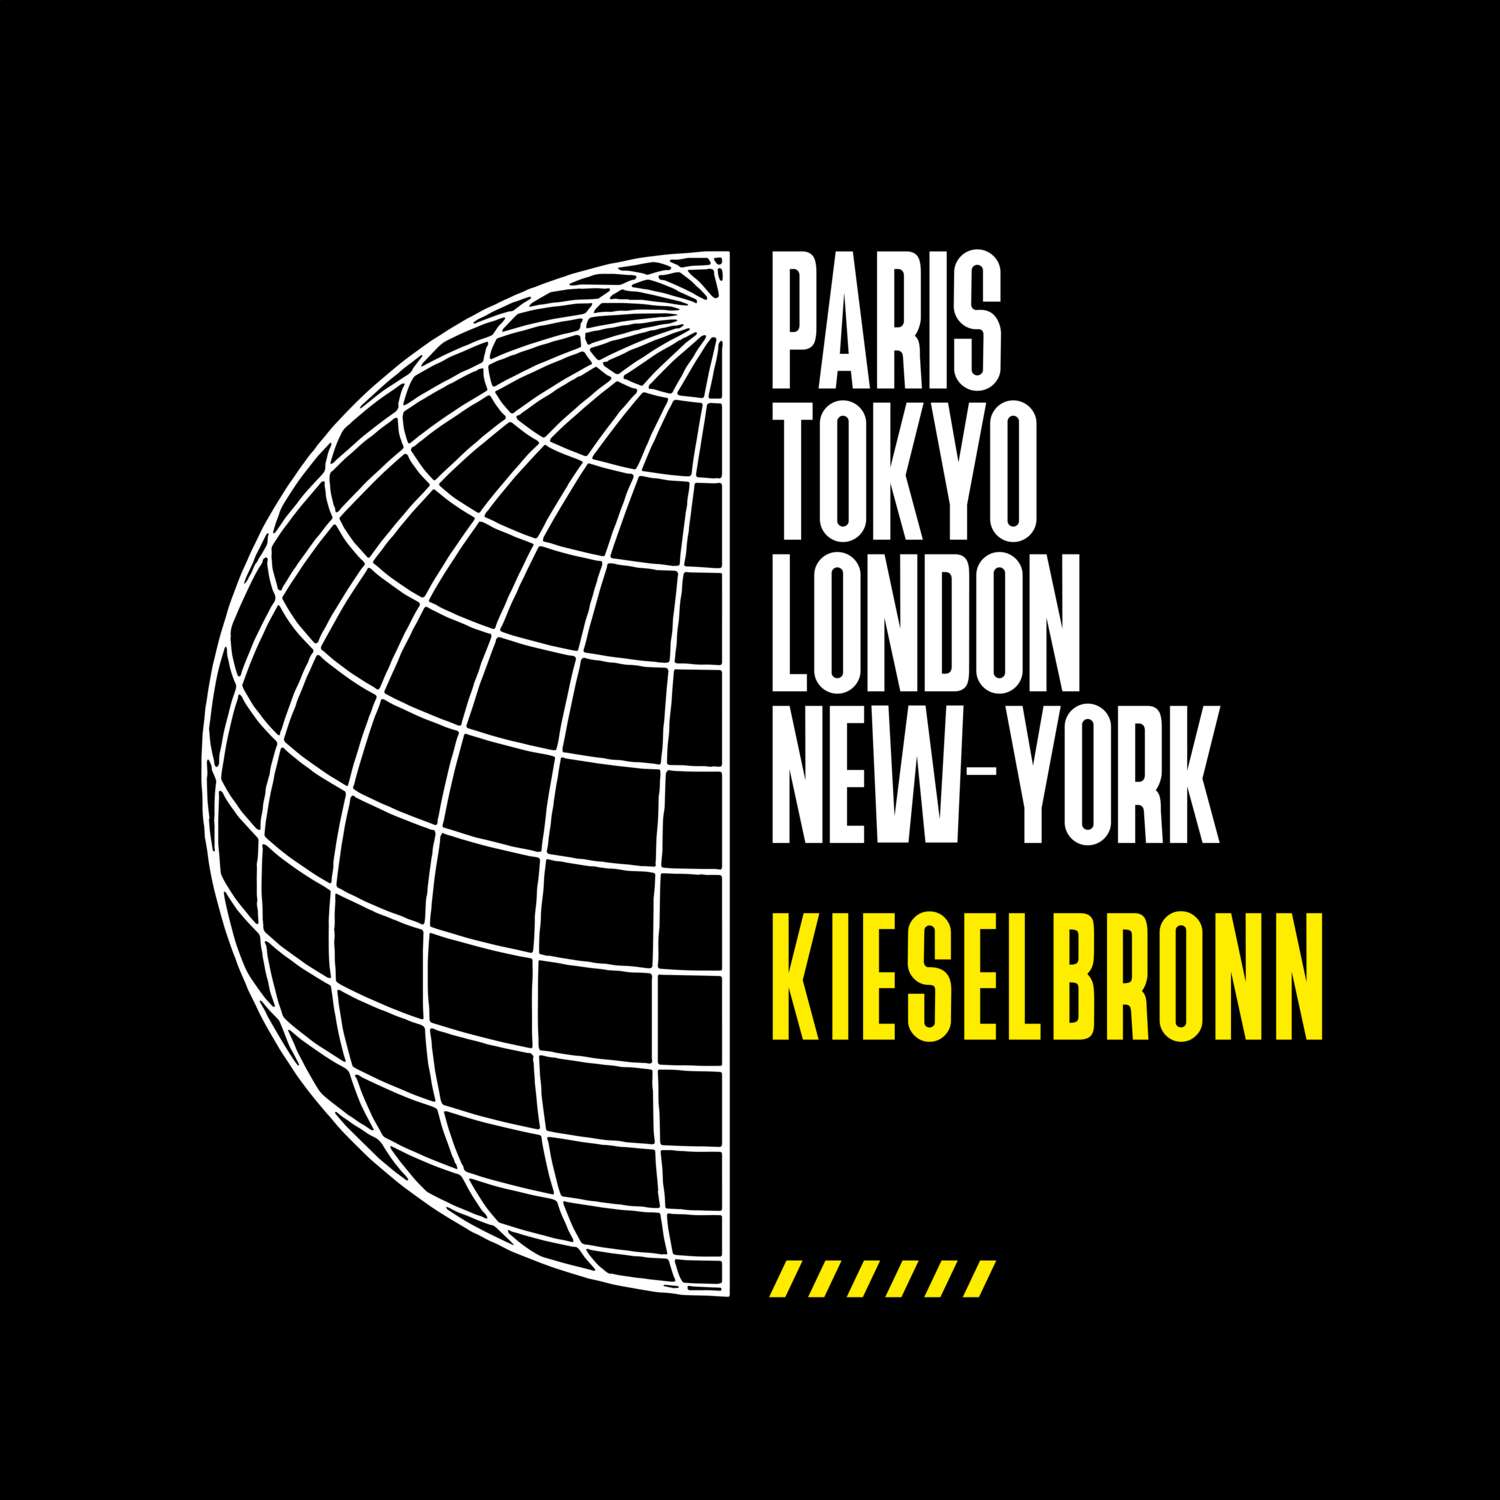 Kieselbronn T-Shirt »Paris Tokyo London«